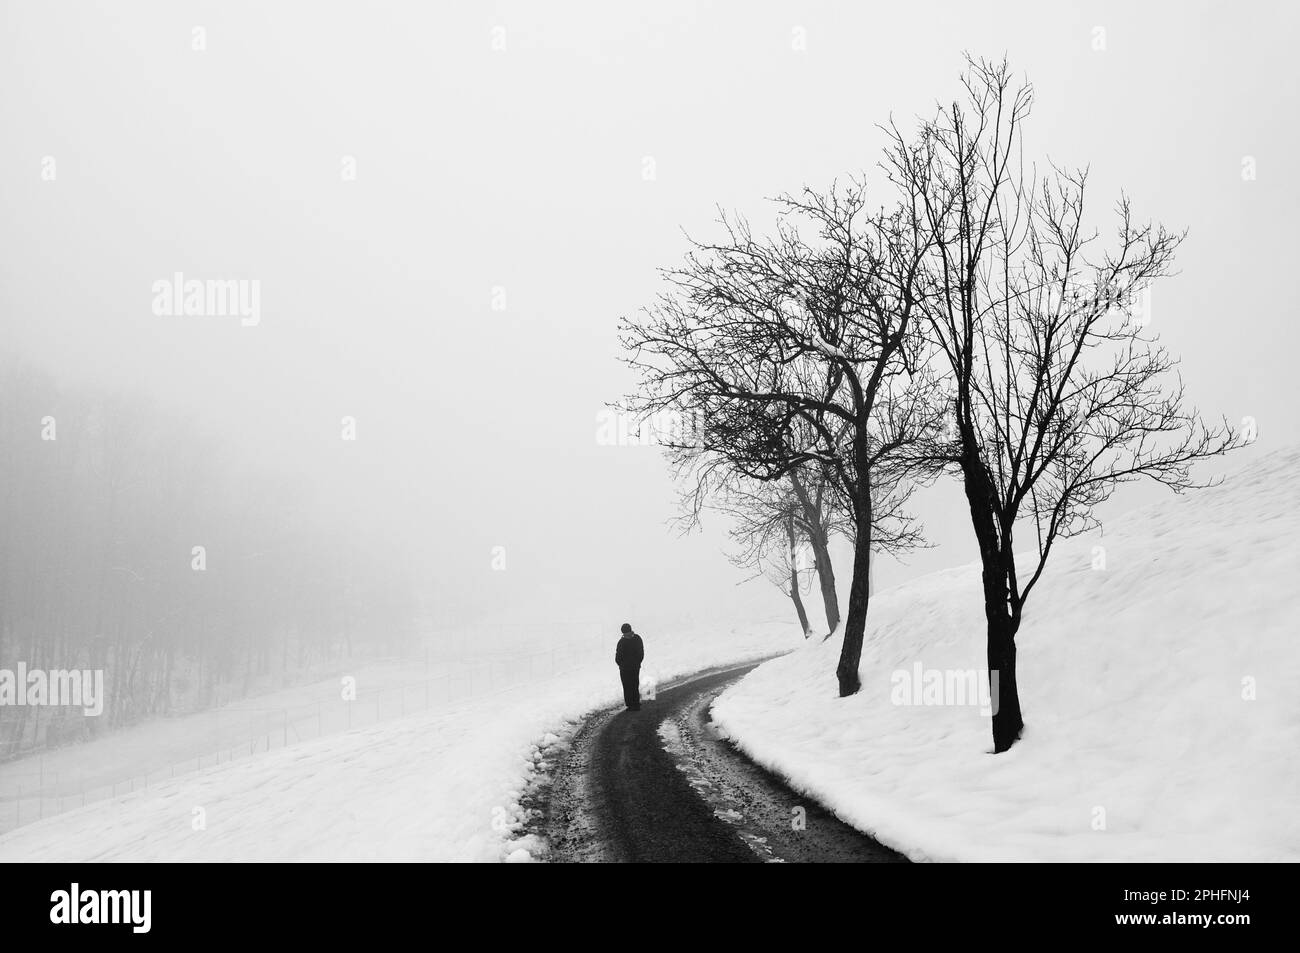 Personne marchant sur une route enneigée sous des arbres près d'une colline enneigée Banque D'Images